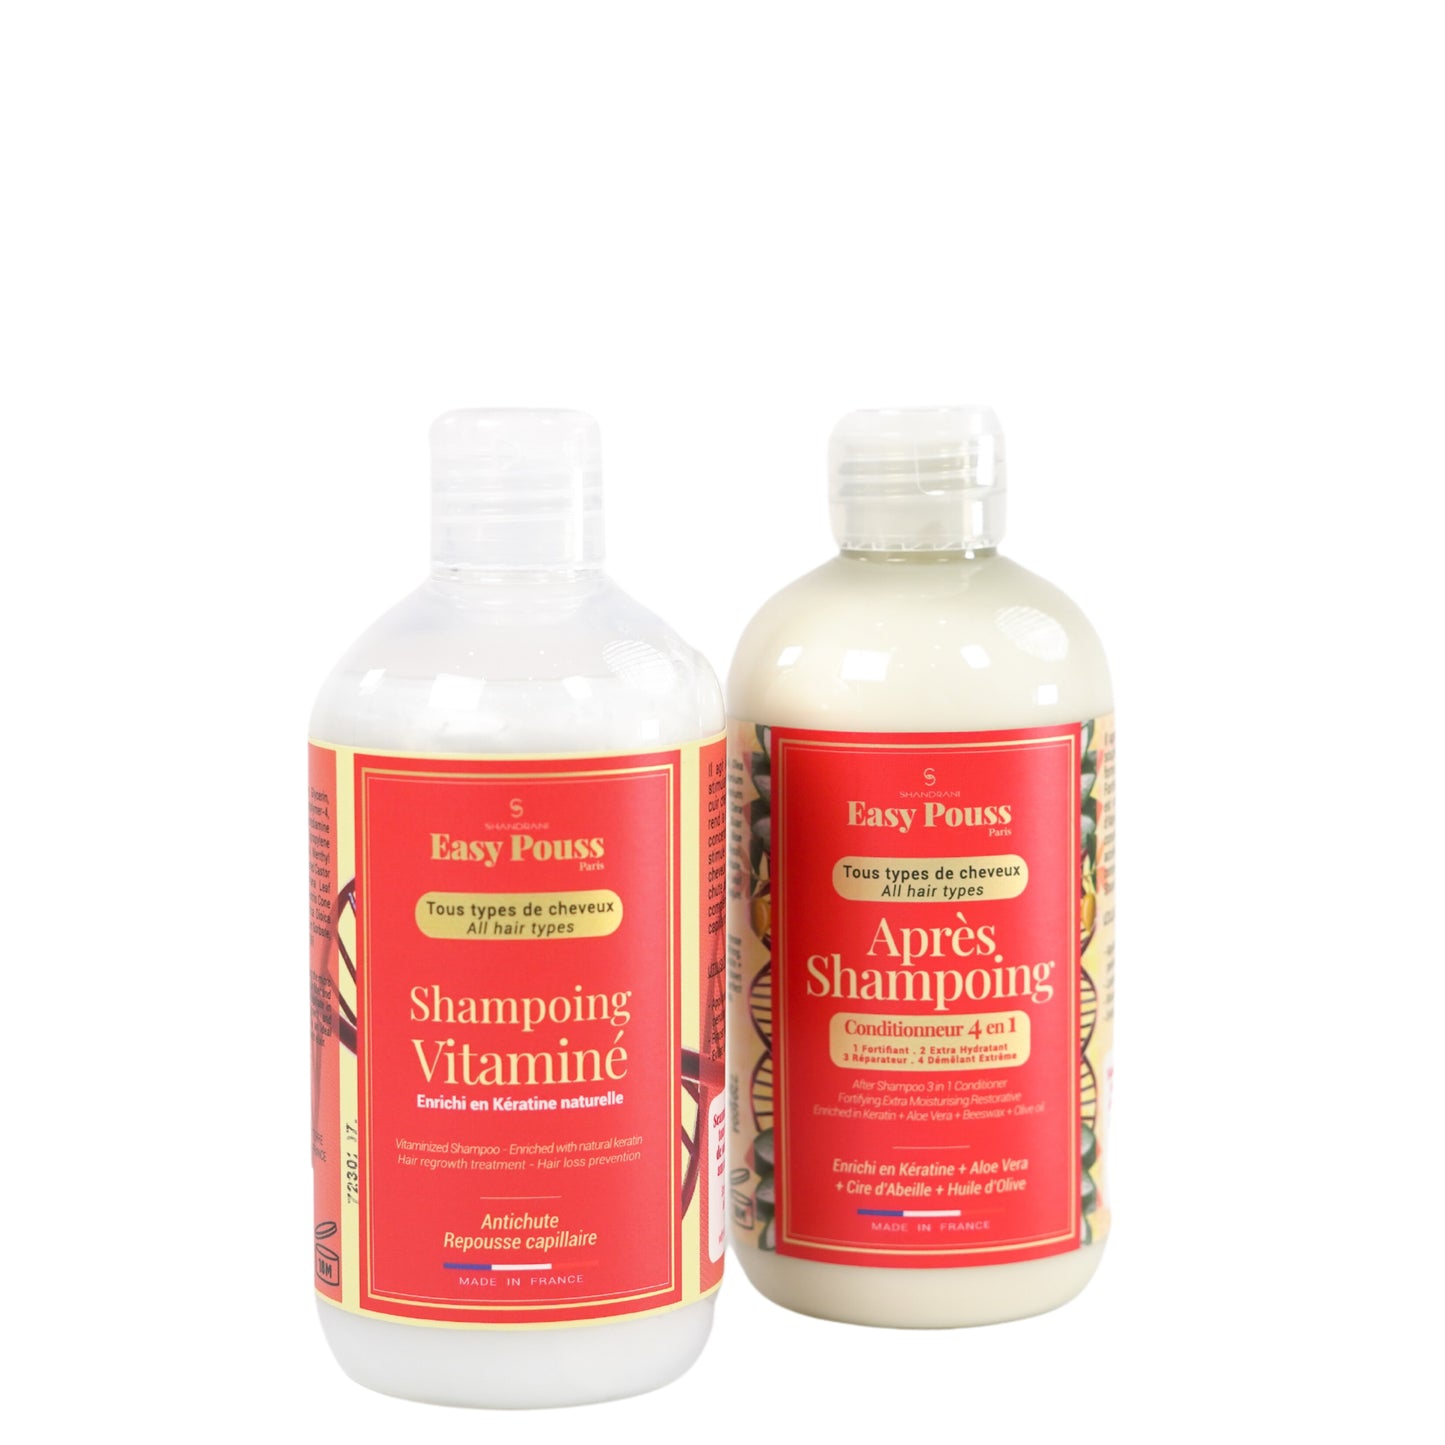 La base de toute routine capillaire : des cheveux propres et un cuir chevelu sain. ce pack contient le shampoing et l'après-shampoing de notre gamme Easy Pouss. 